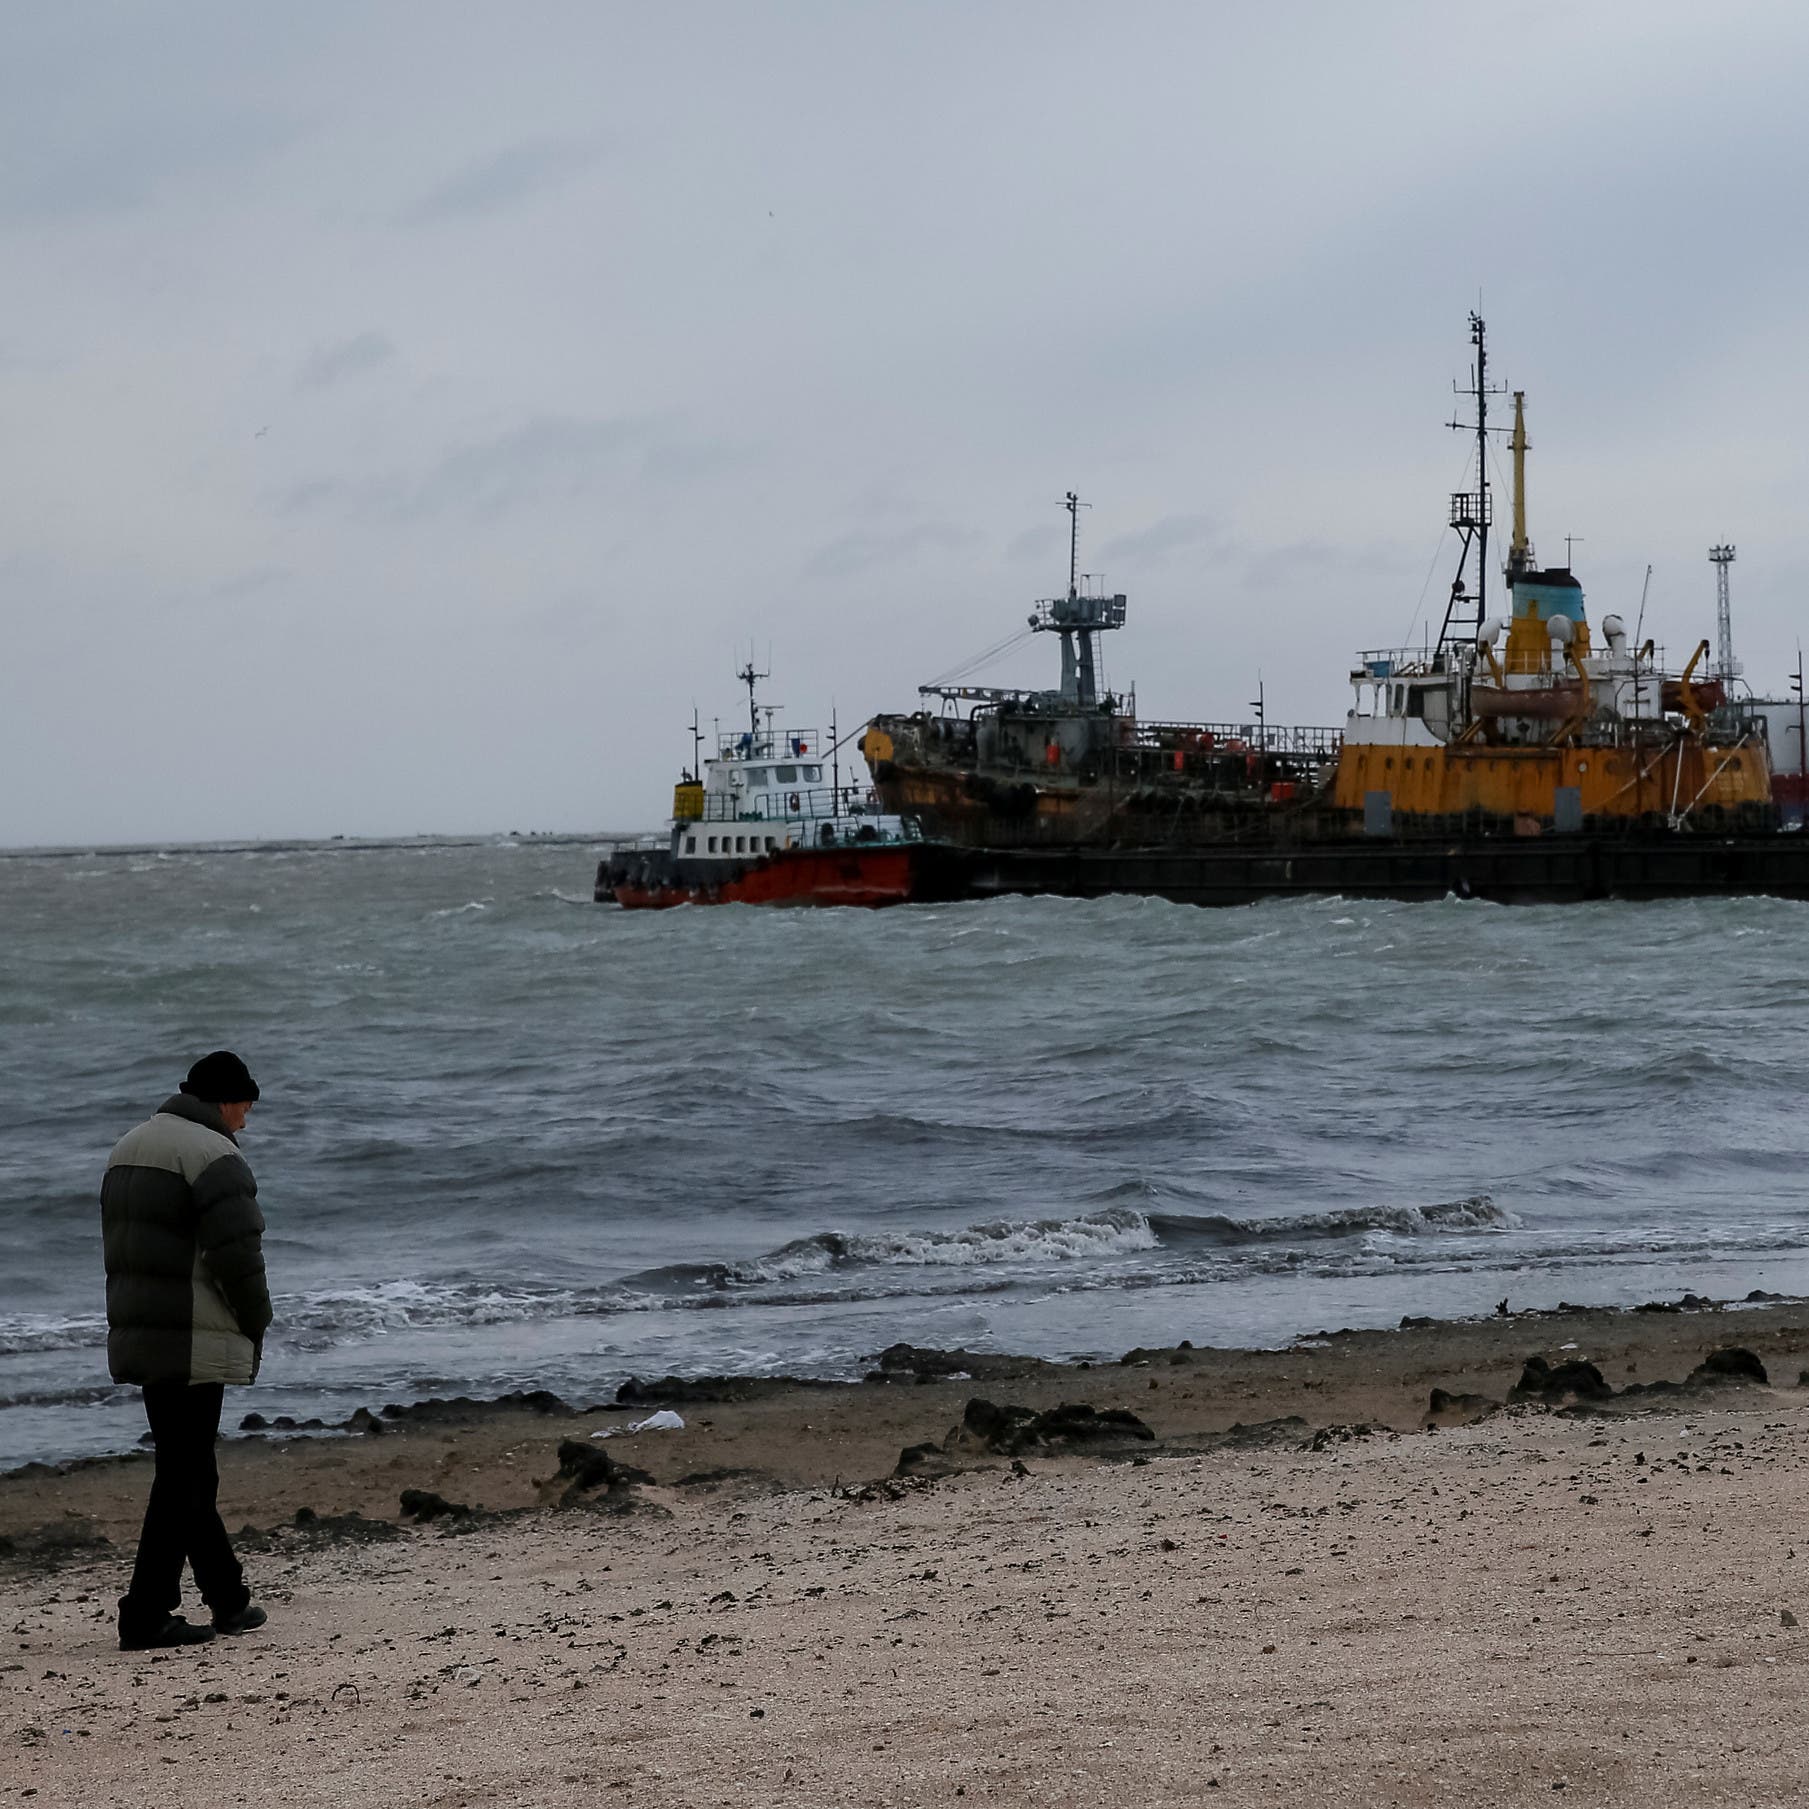 تضارب وغموض.. ما مصير سفن الحبوب الأوكرانية؟